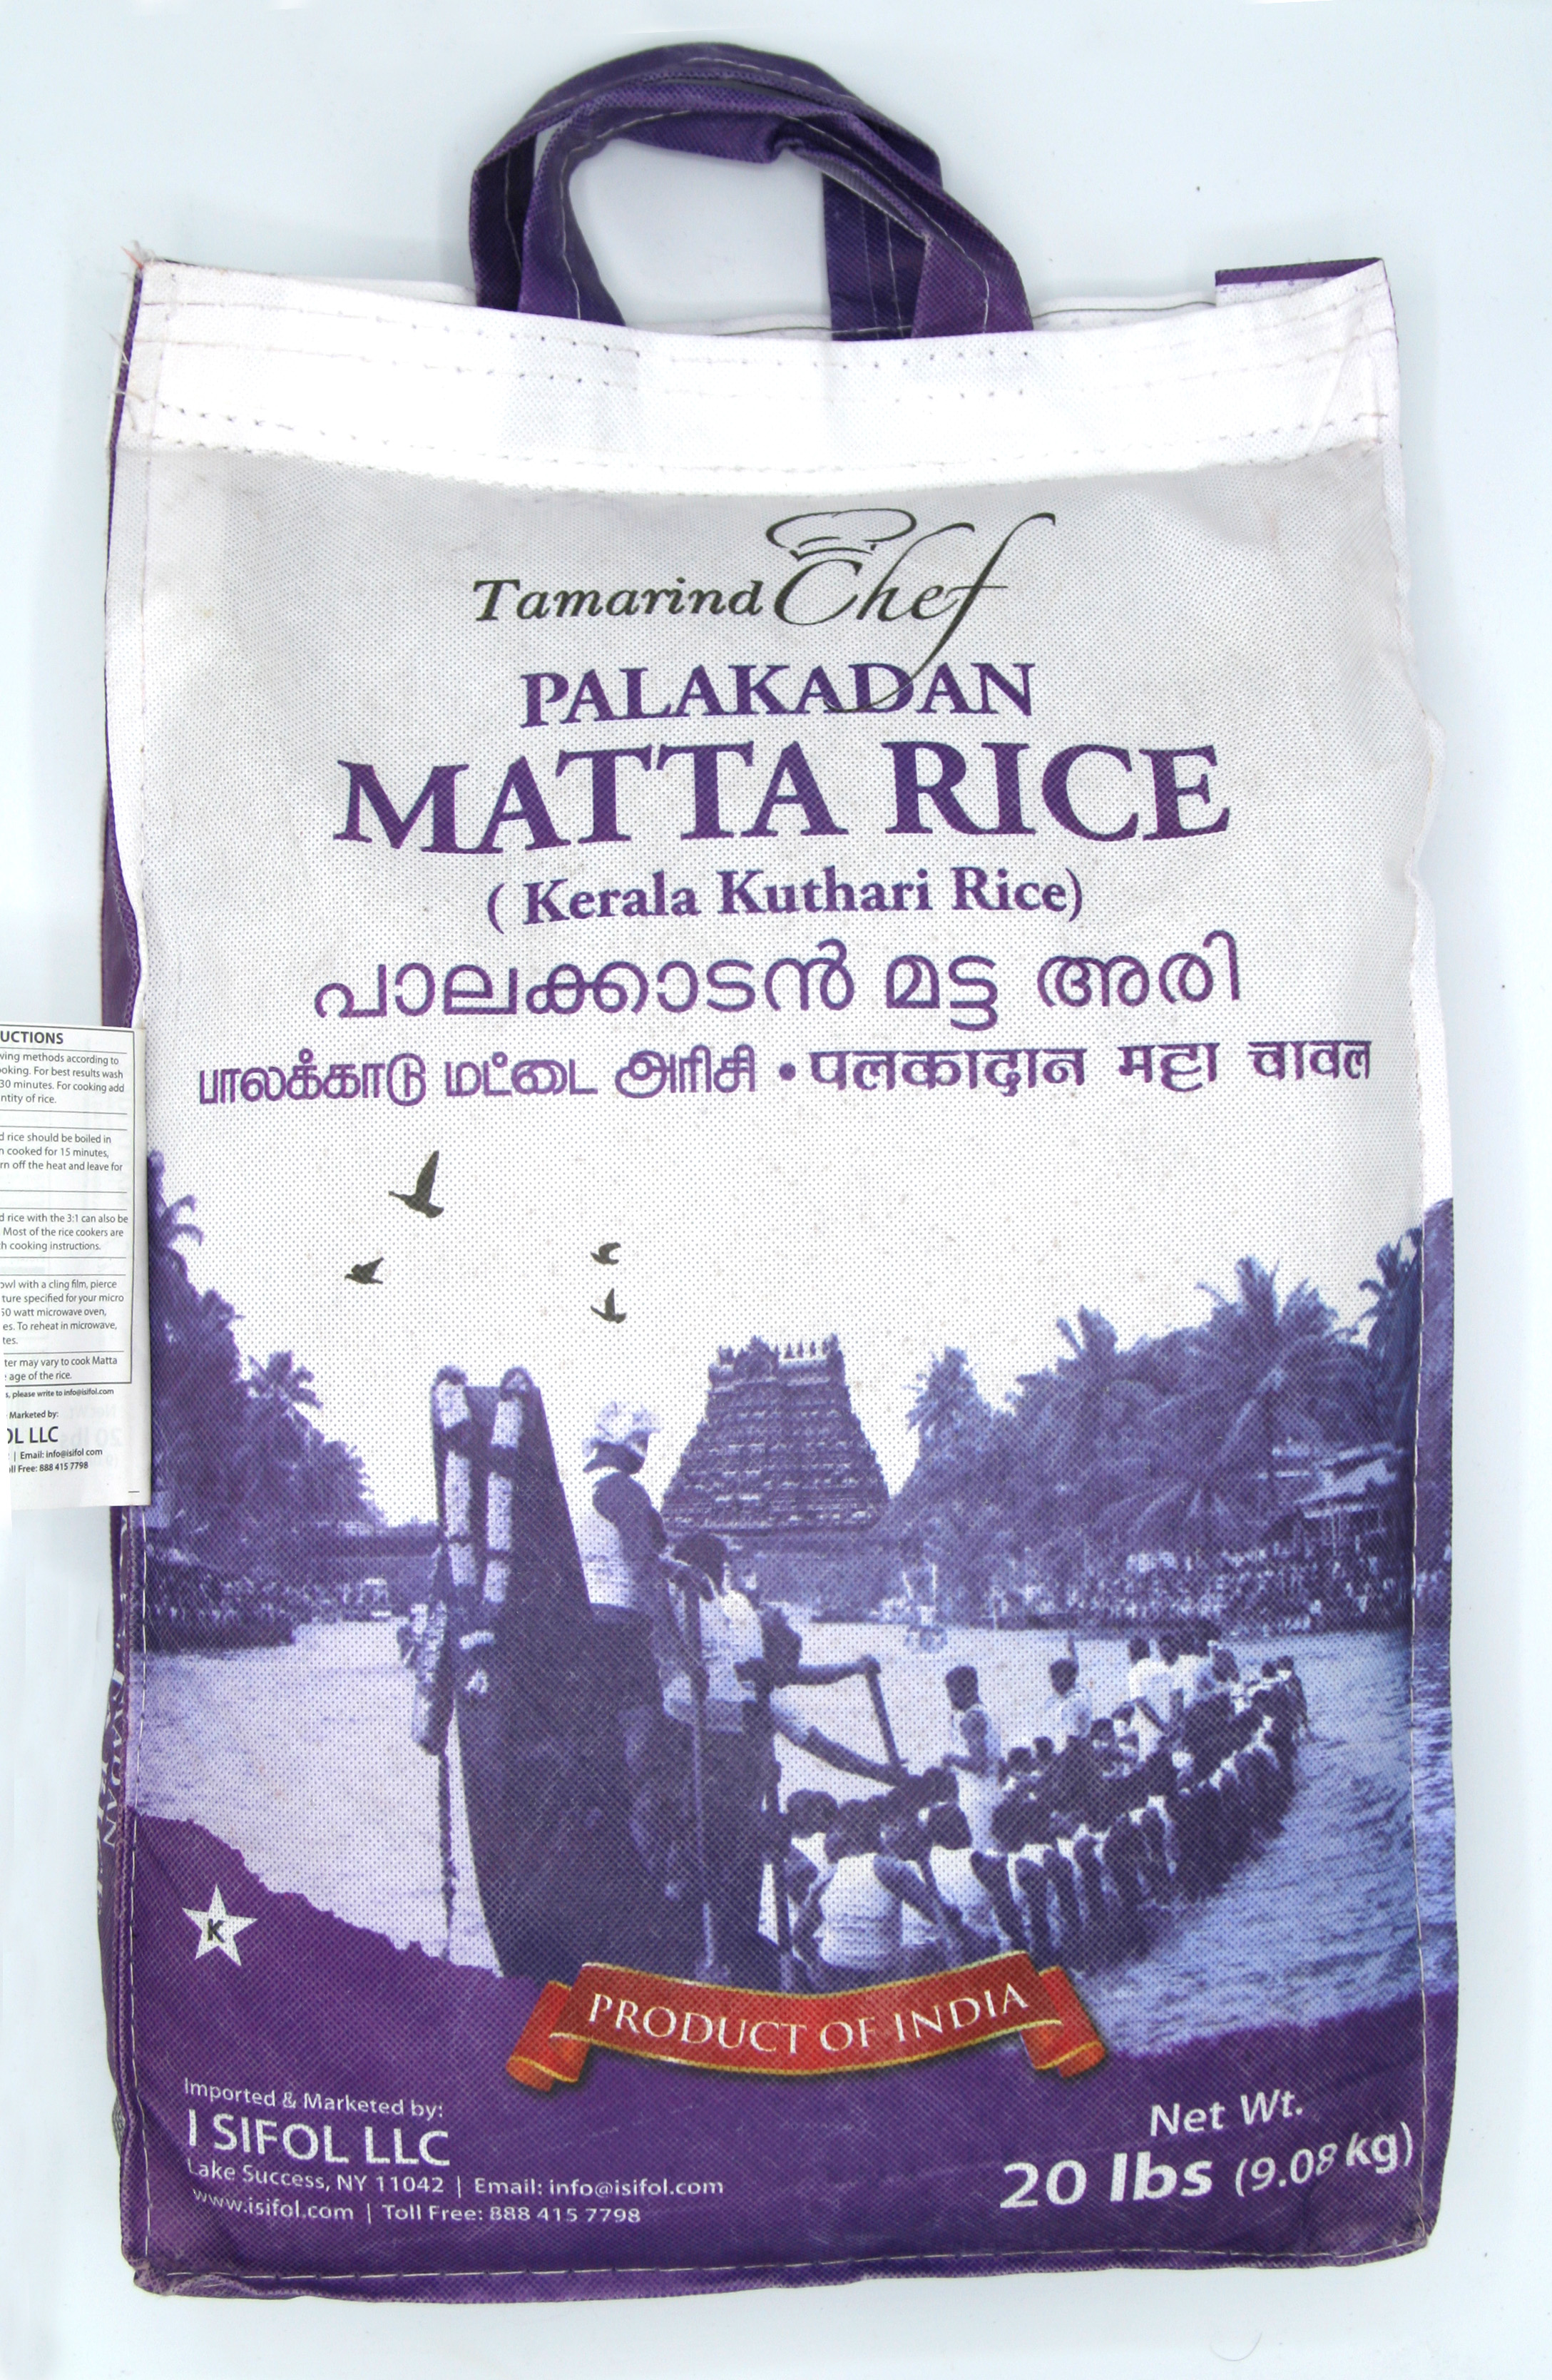 Tamarind Chef Rose Matta (Kerala Red) Rice	